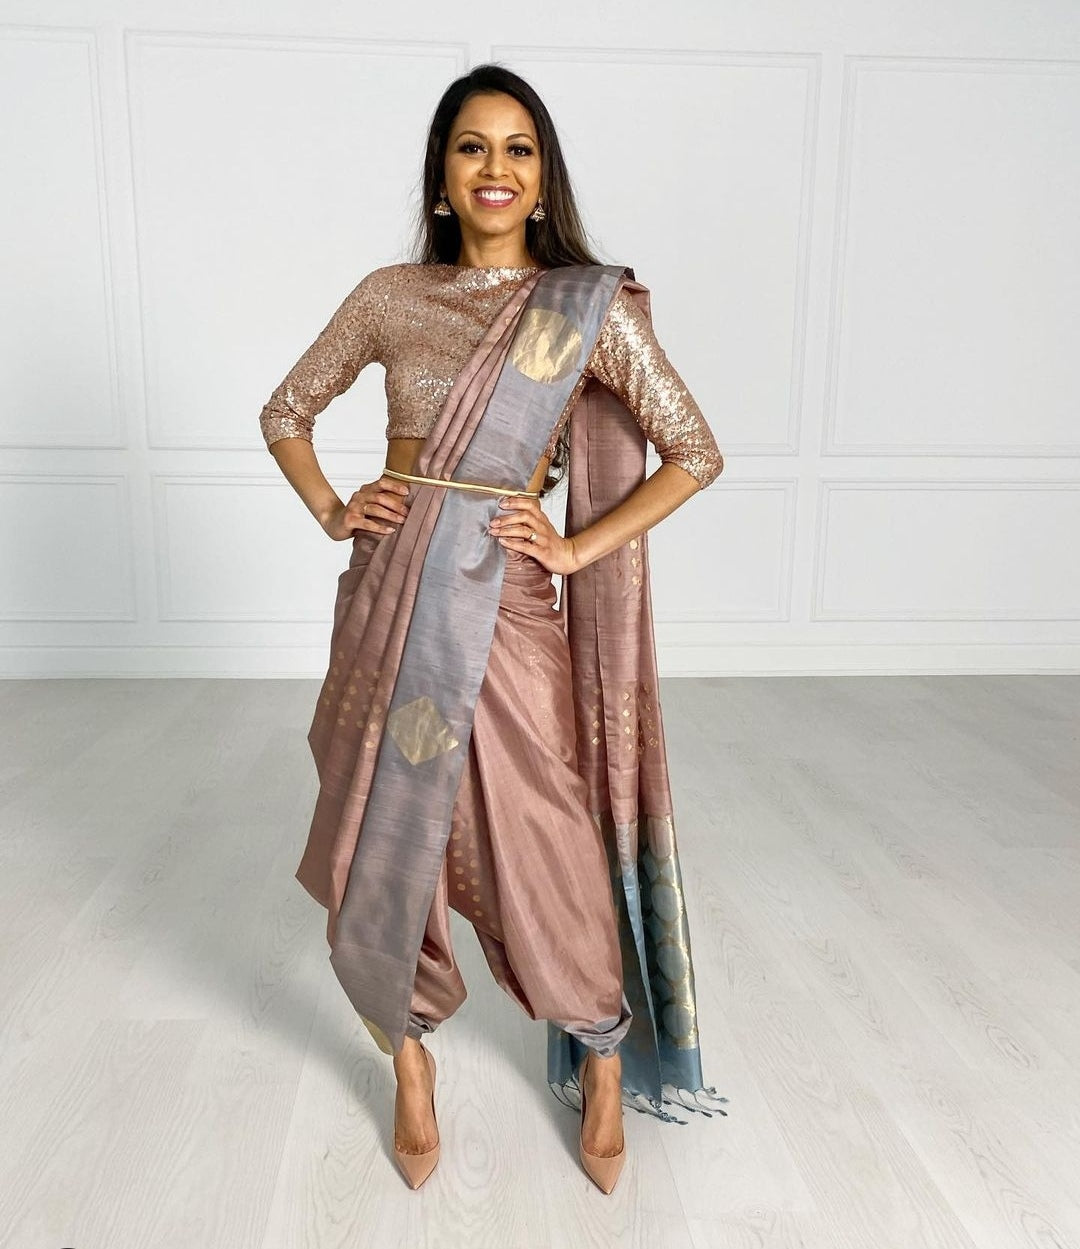 Dhoti Style Saree Draping | Saree Draping Style to Look Slim | Dhoti Saree  Buy Online | Ways to Drape a Saree to Look Slim | How to Wear Indian Saree |